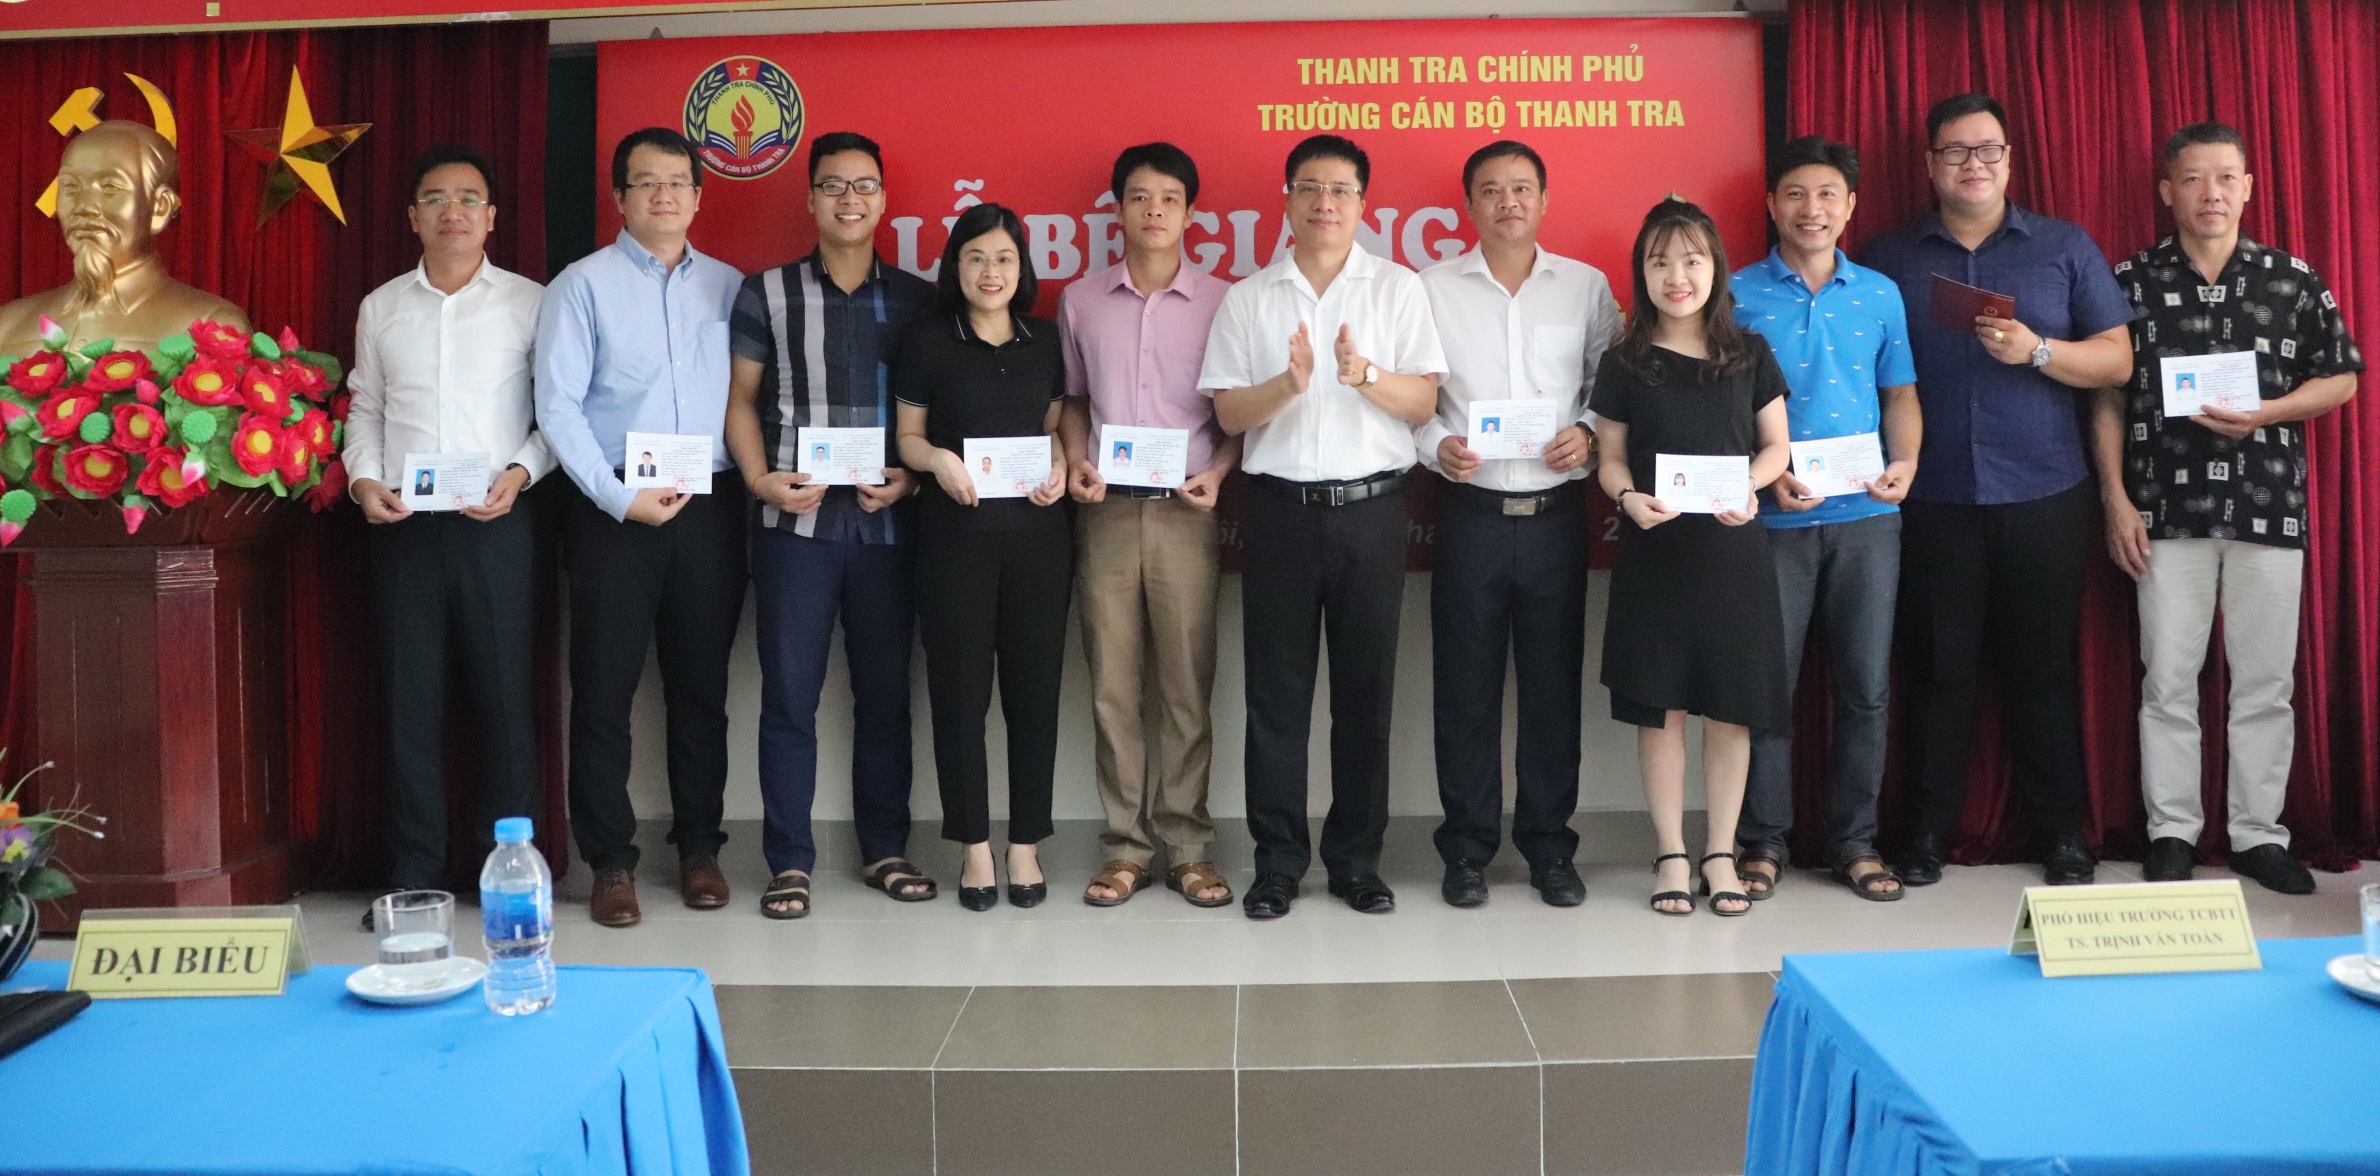 TS Trịnh Văn Toàn Phó Hiệu trưởng Nhà trường trao chứng chỉ cho học viên